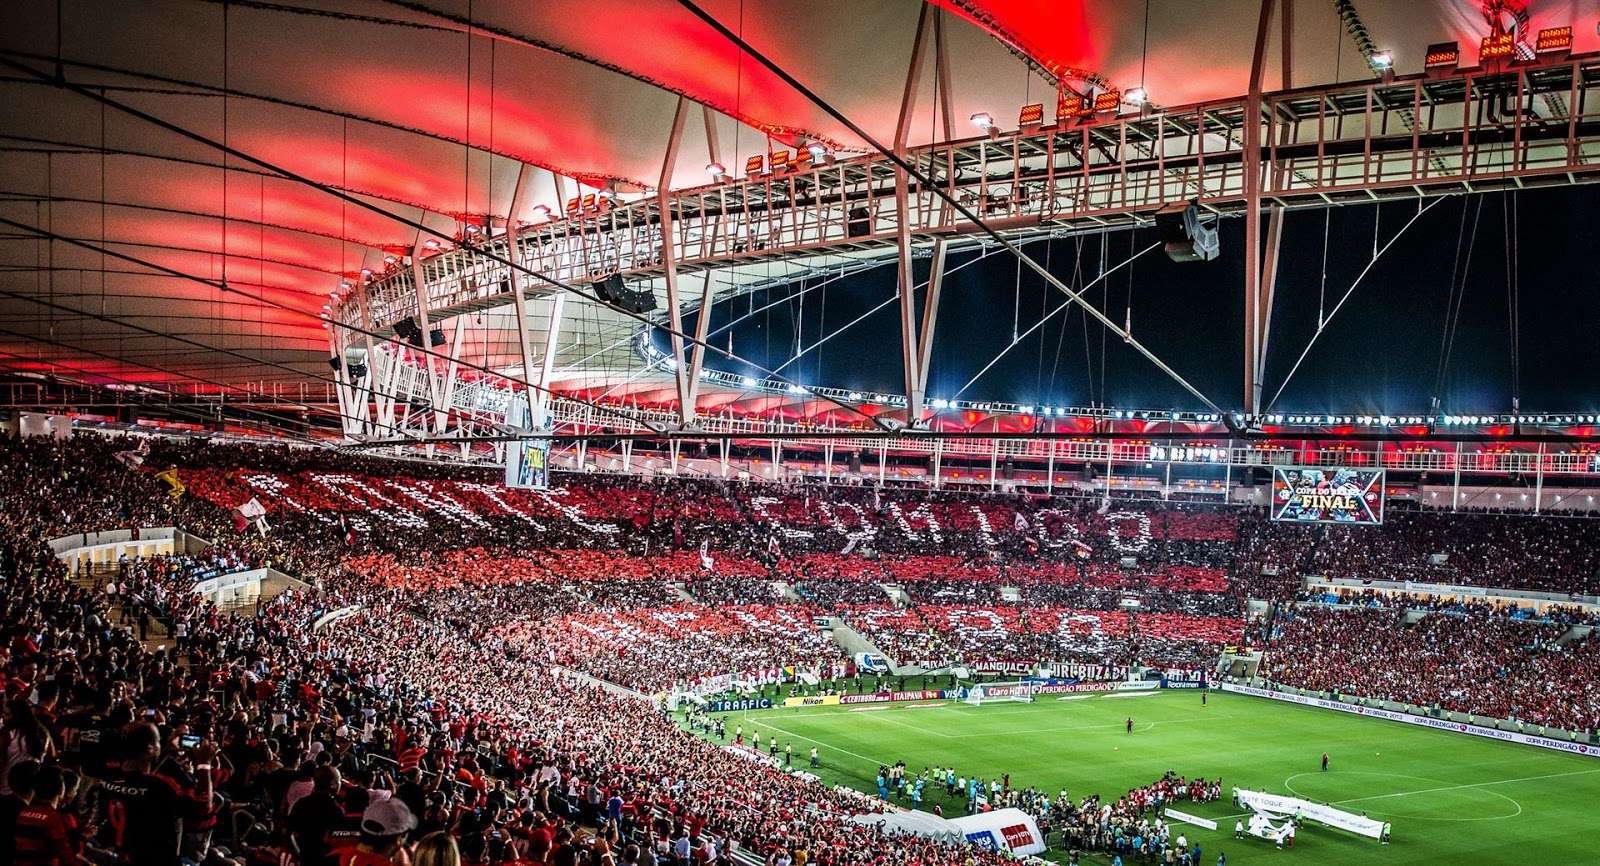 Maior torcida continua sendo a do Flamengo aponta pesquisa; A torcida do Flamengo continua sendo a maior do Brasil